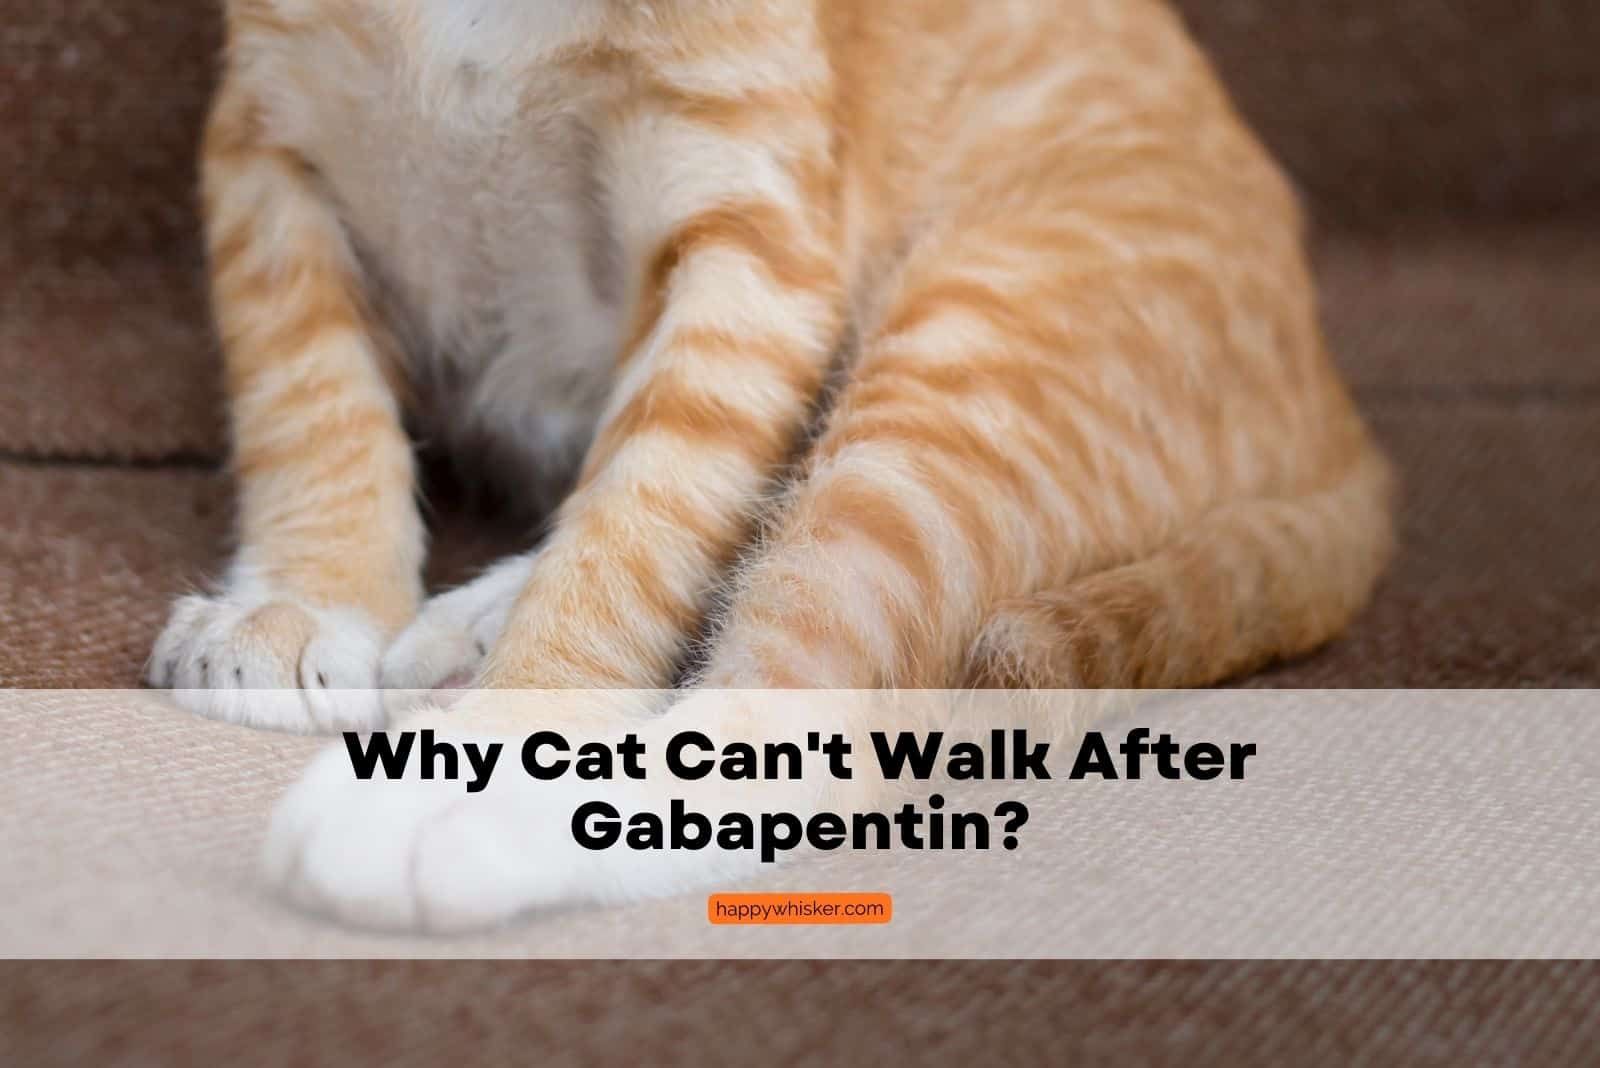 Cat Can't Walk After Gabapentin